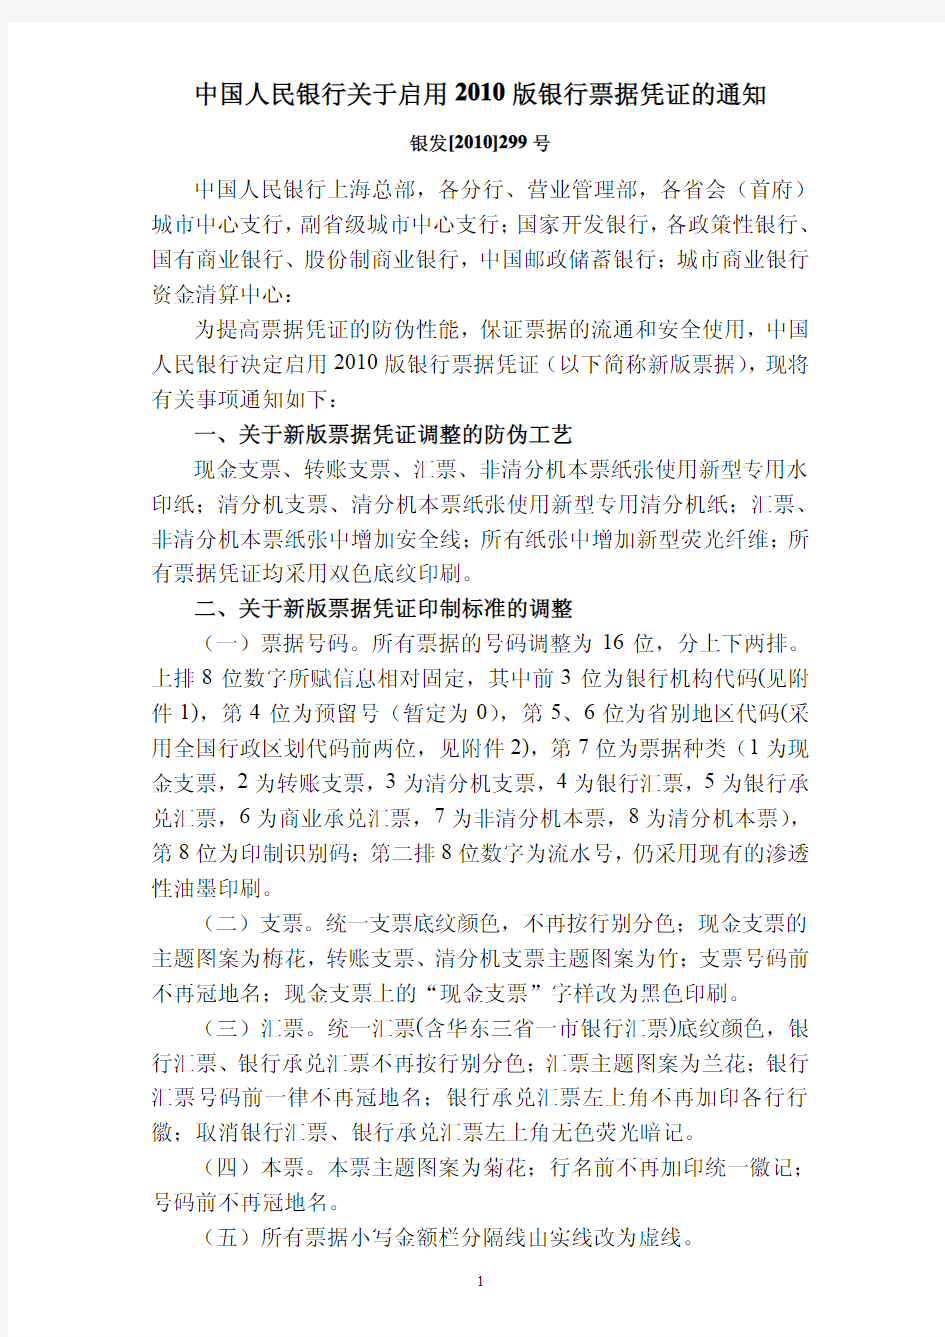 中国人民银行关于启用XXXX版银行票据凭证的通知